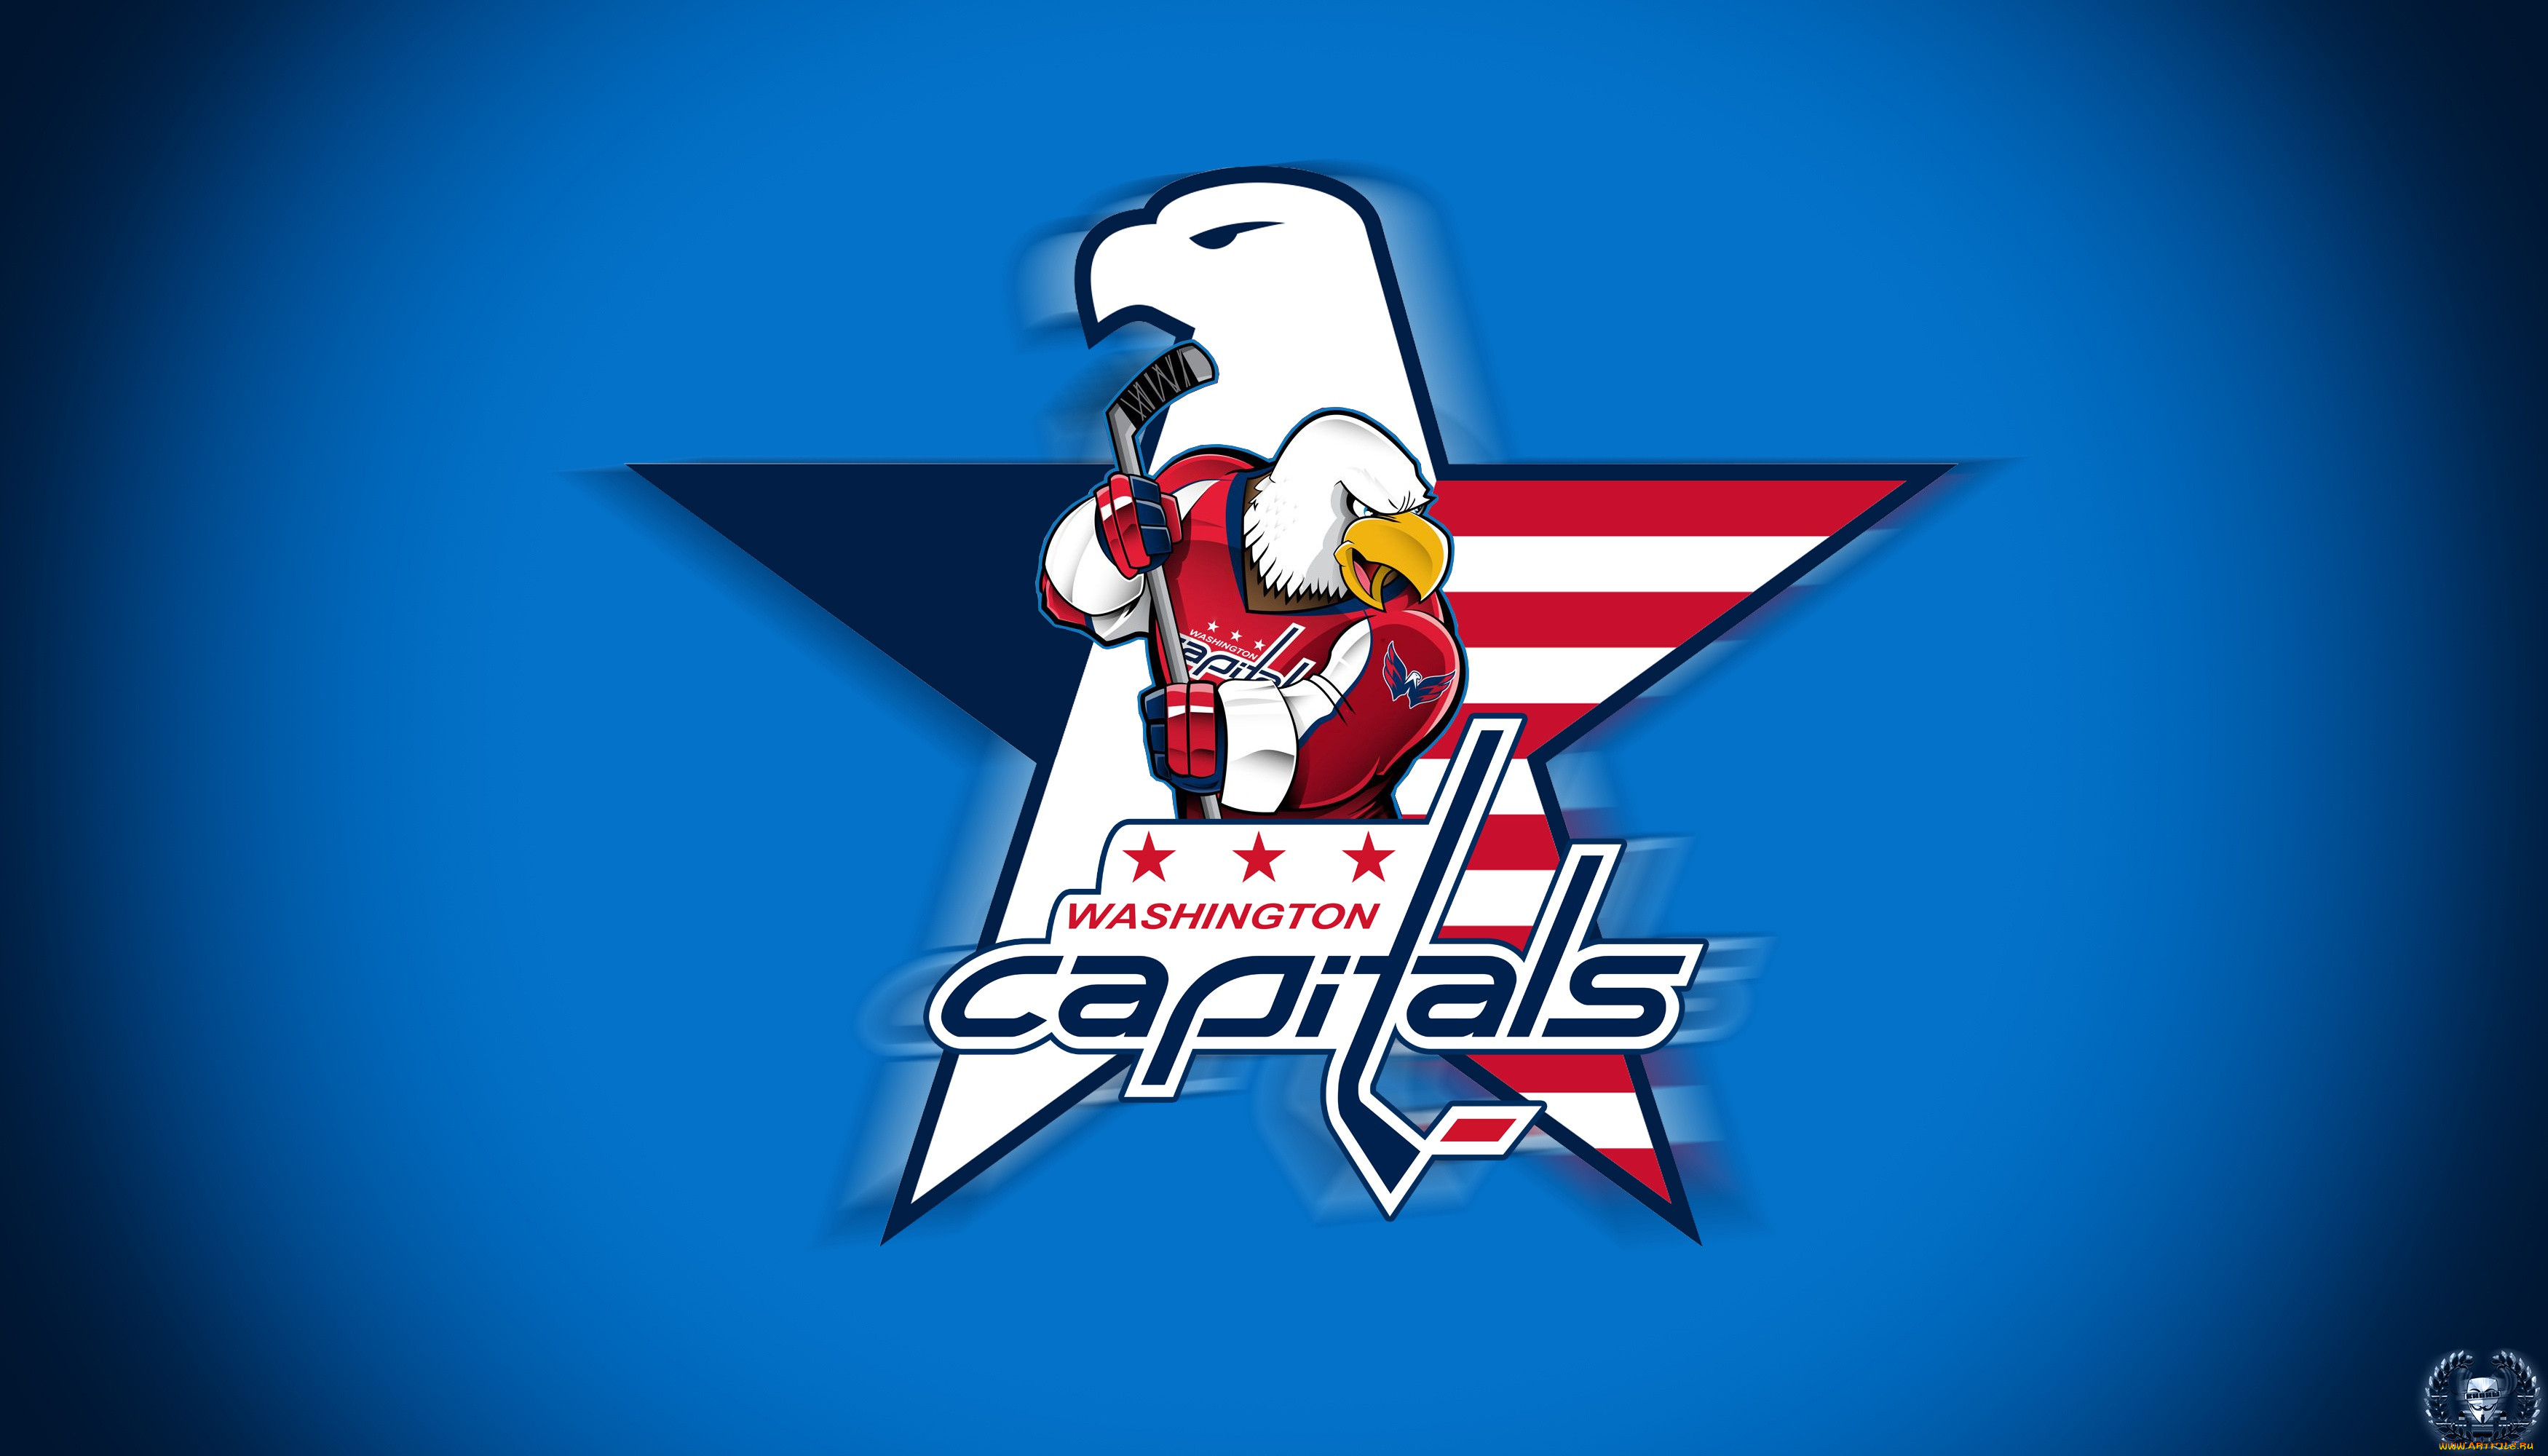 Обои на телефон хк. НХЛ Вашингтон Кэпиталз логотип. Эмблема хоккейной команды Вашингтон Кэпиталз. Эмблемы клубов НХЛ Вашингтон. Вашингтон Кэпиталс хк эмблема.